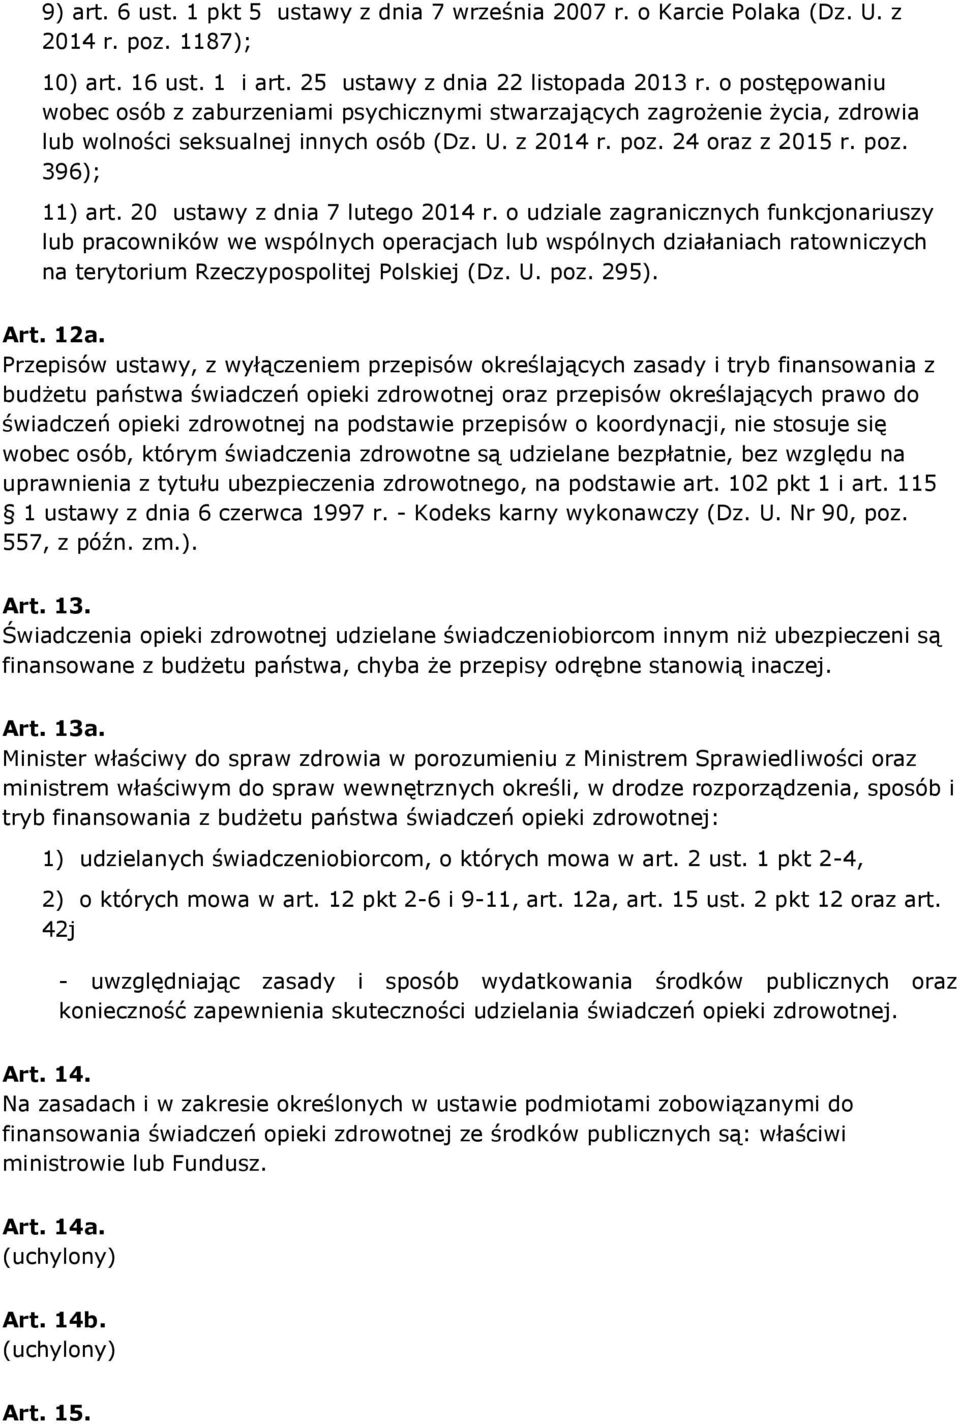 20 ustawy z dnia 7 lutego 2014 r. o udziale zagranicznych funkcjonariuszy lub pracowników we wspólnych operacjach lub wspólnych działaniach ratowniczych na terytorium Rzeczypospolitej Polskiej (Dz. U.